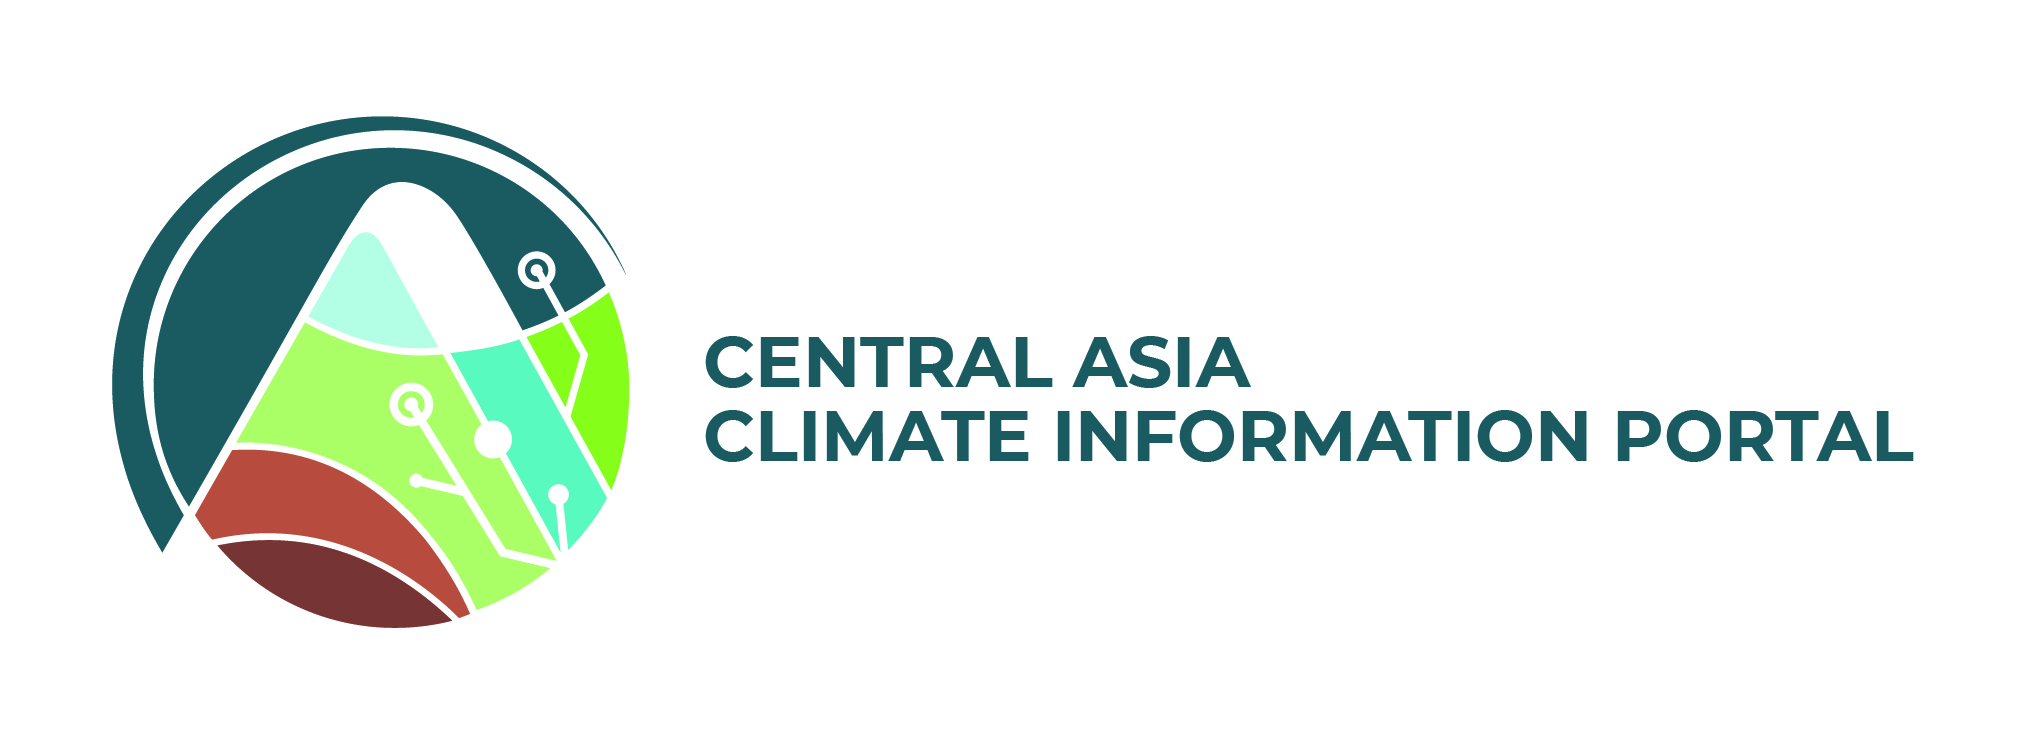 Центрально-Азиатская климатическая информационная платформа как инструмент для климатически устойчивого будущего